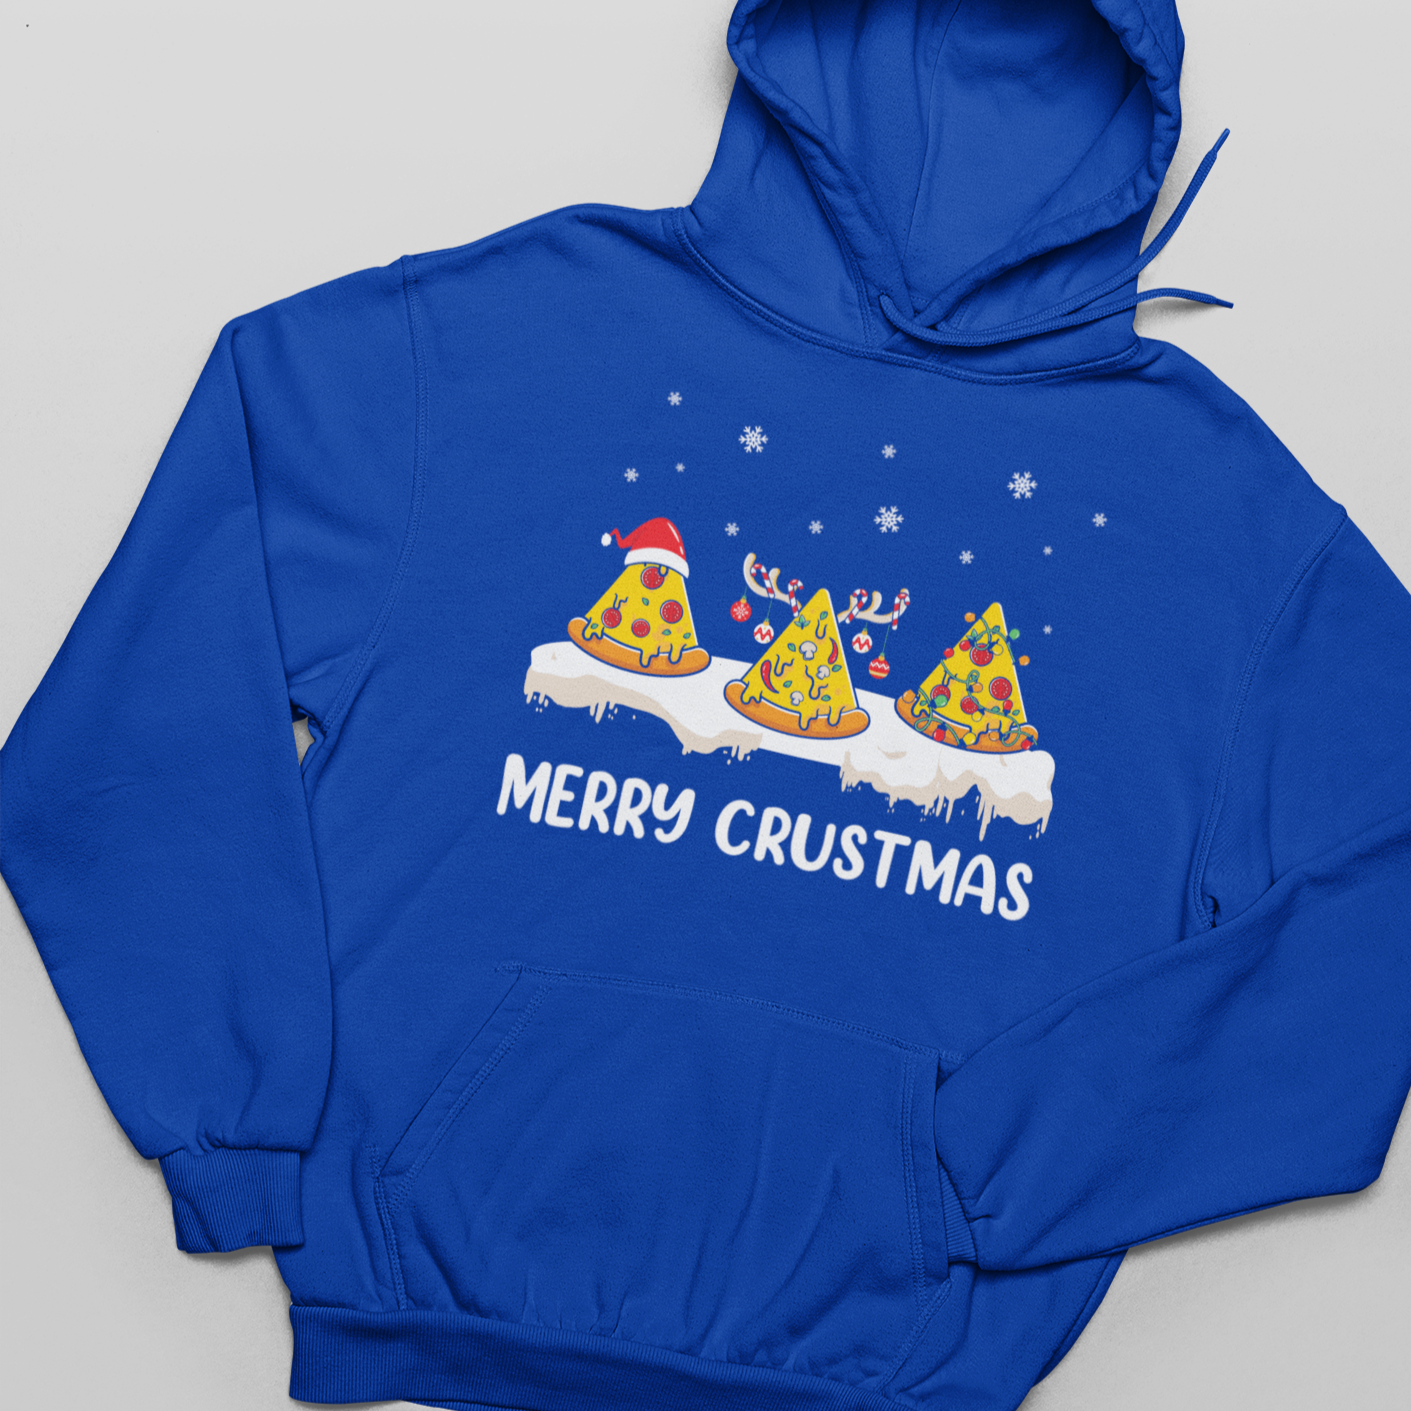 Merry Crustmas - Unisex Pullover Hoodie